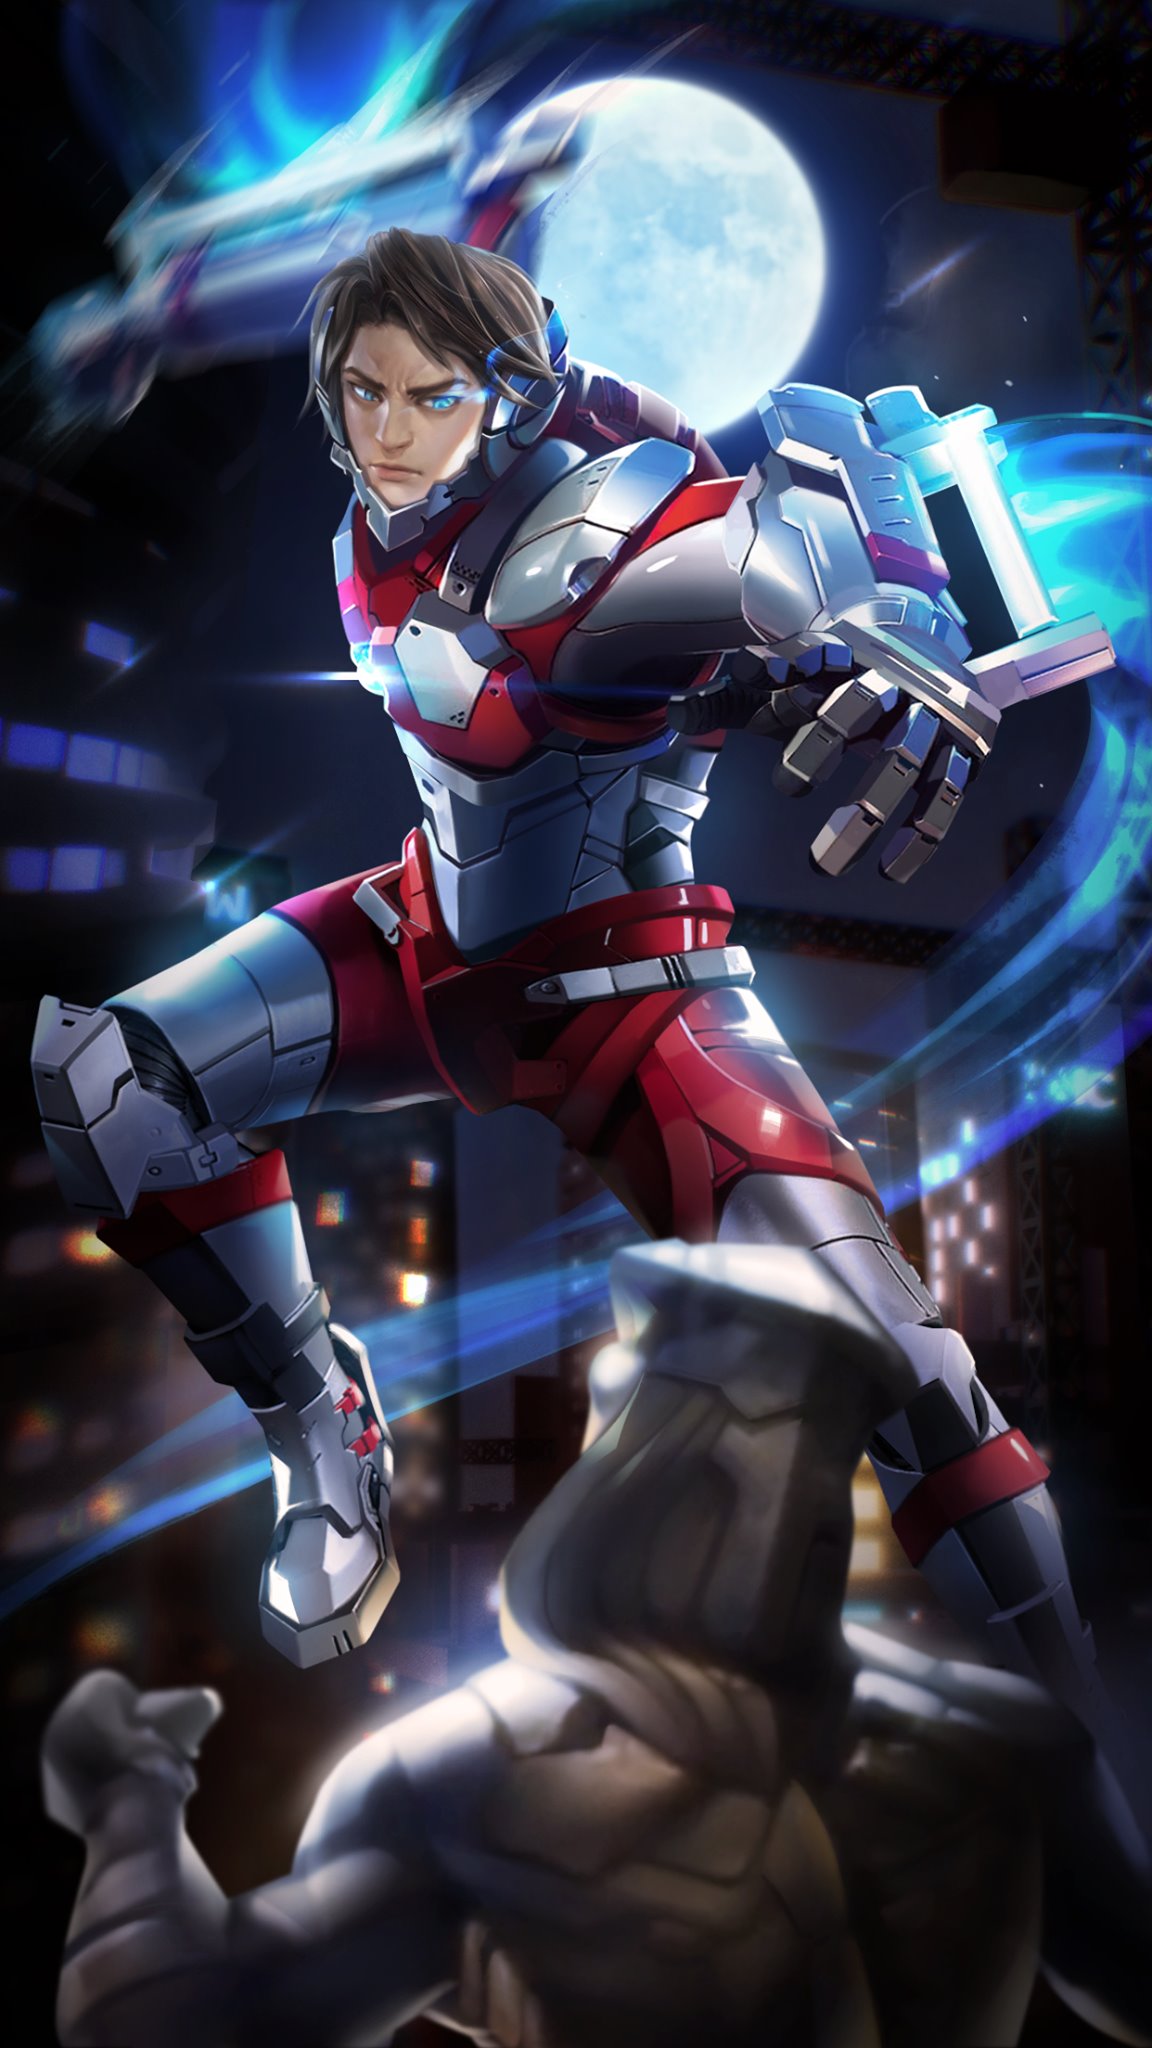 Bạn là fan của Ultraman và cũng là một người yêu thích Ryoma? Hãy xem hình ảnh Ultraman của Ryoma này, nơi bạn sẽ chiêm ngưỡng nhân vật yêu thích của mình trong tư thế chiến đấu đầy mạnh mẽ.